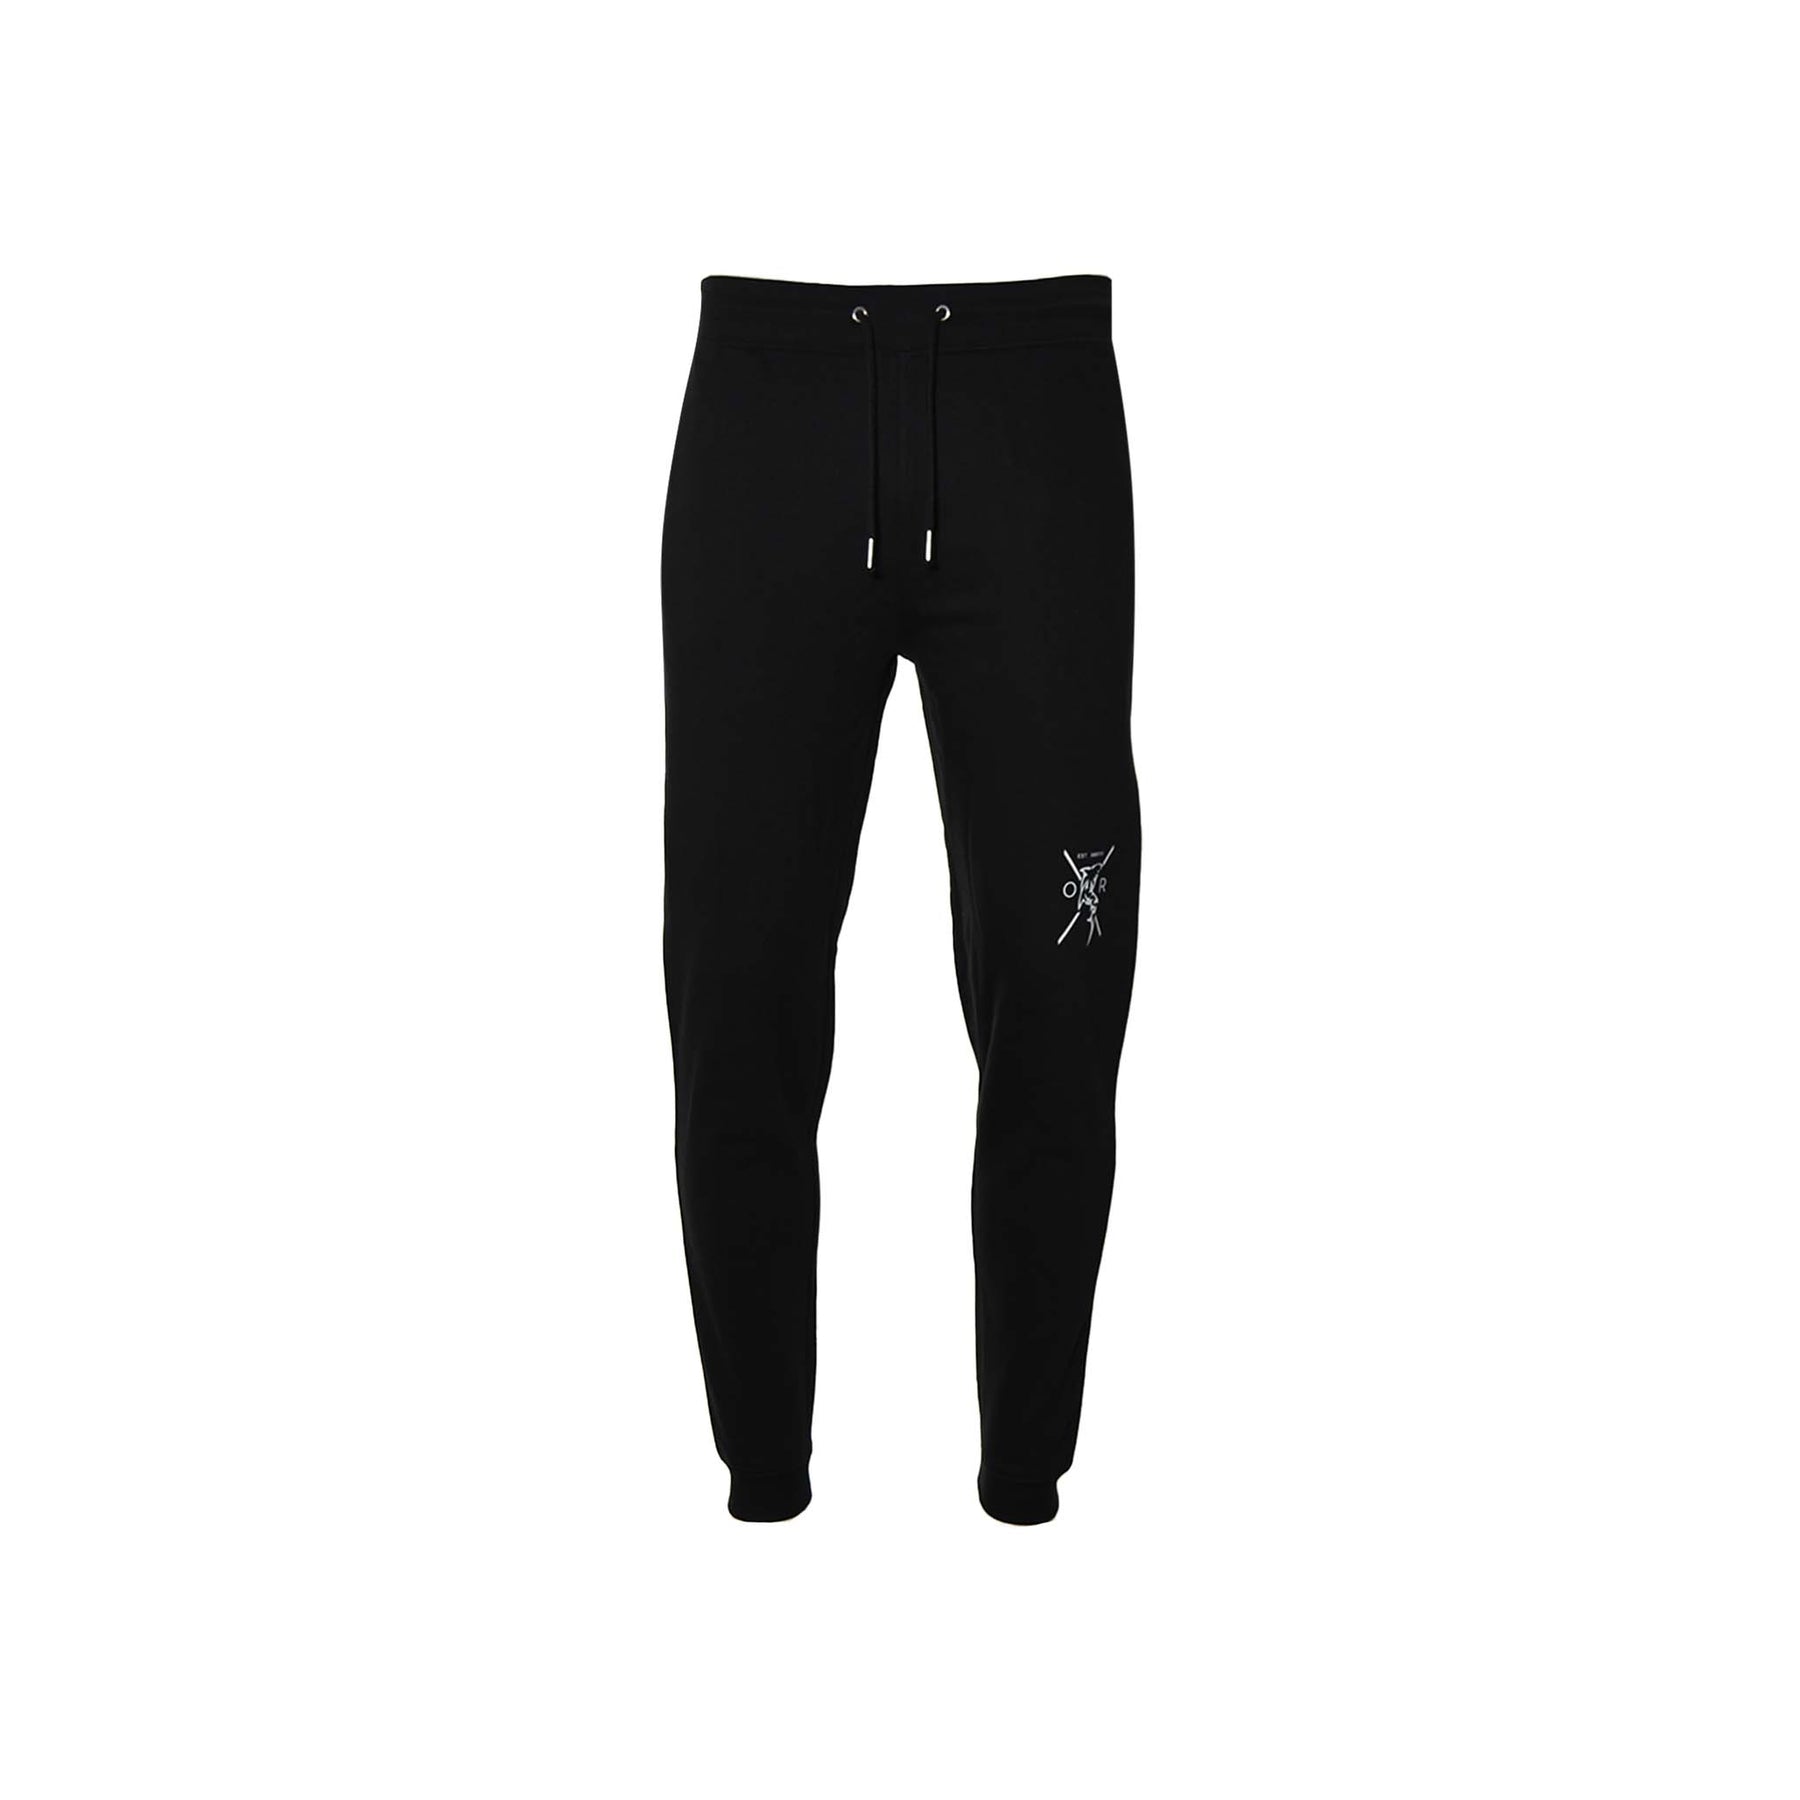 NWT $78.00 Men's RBX Tapered Jogger Pants Sweatpants Black Medium